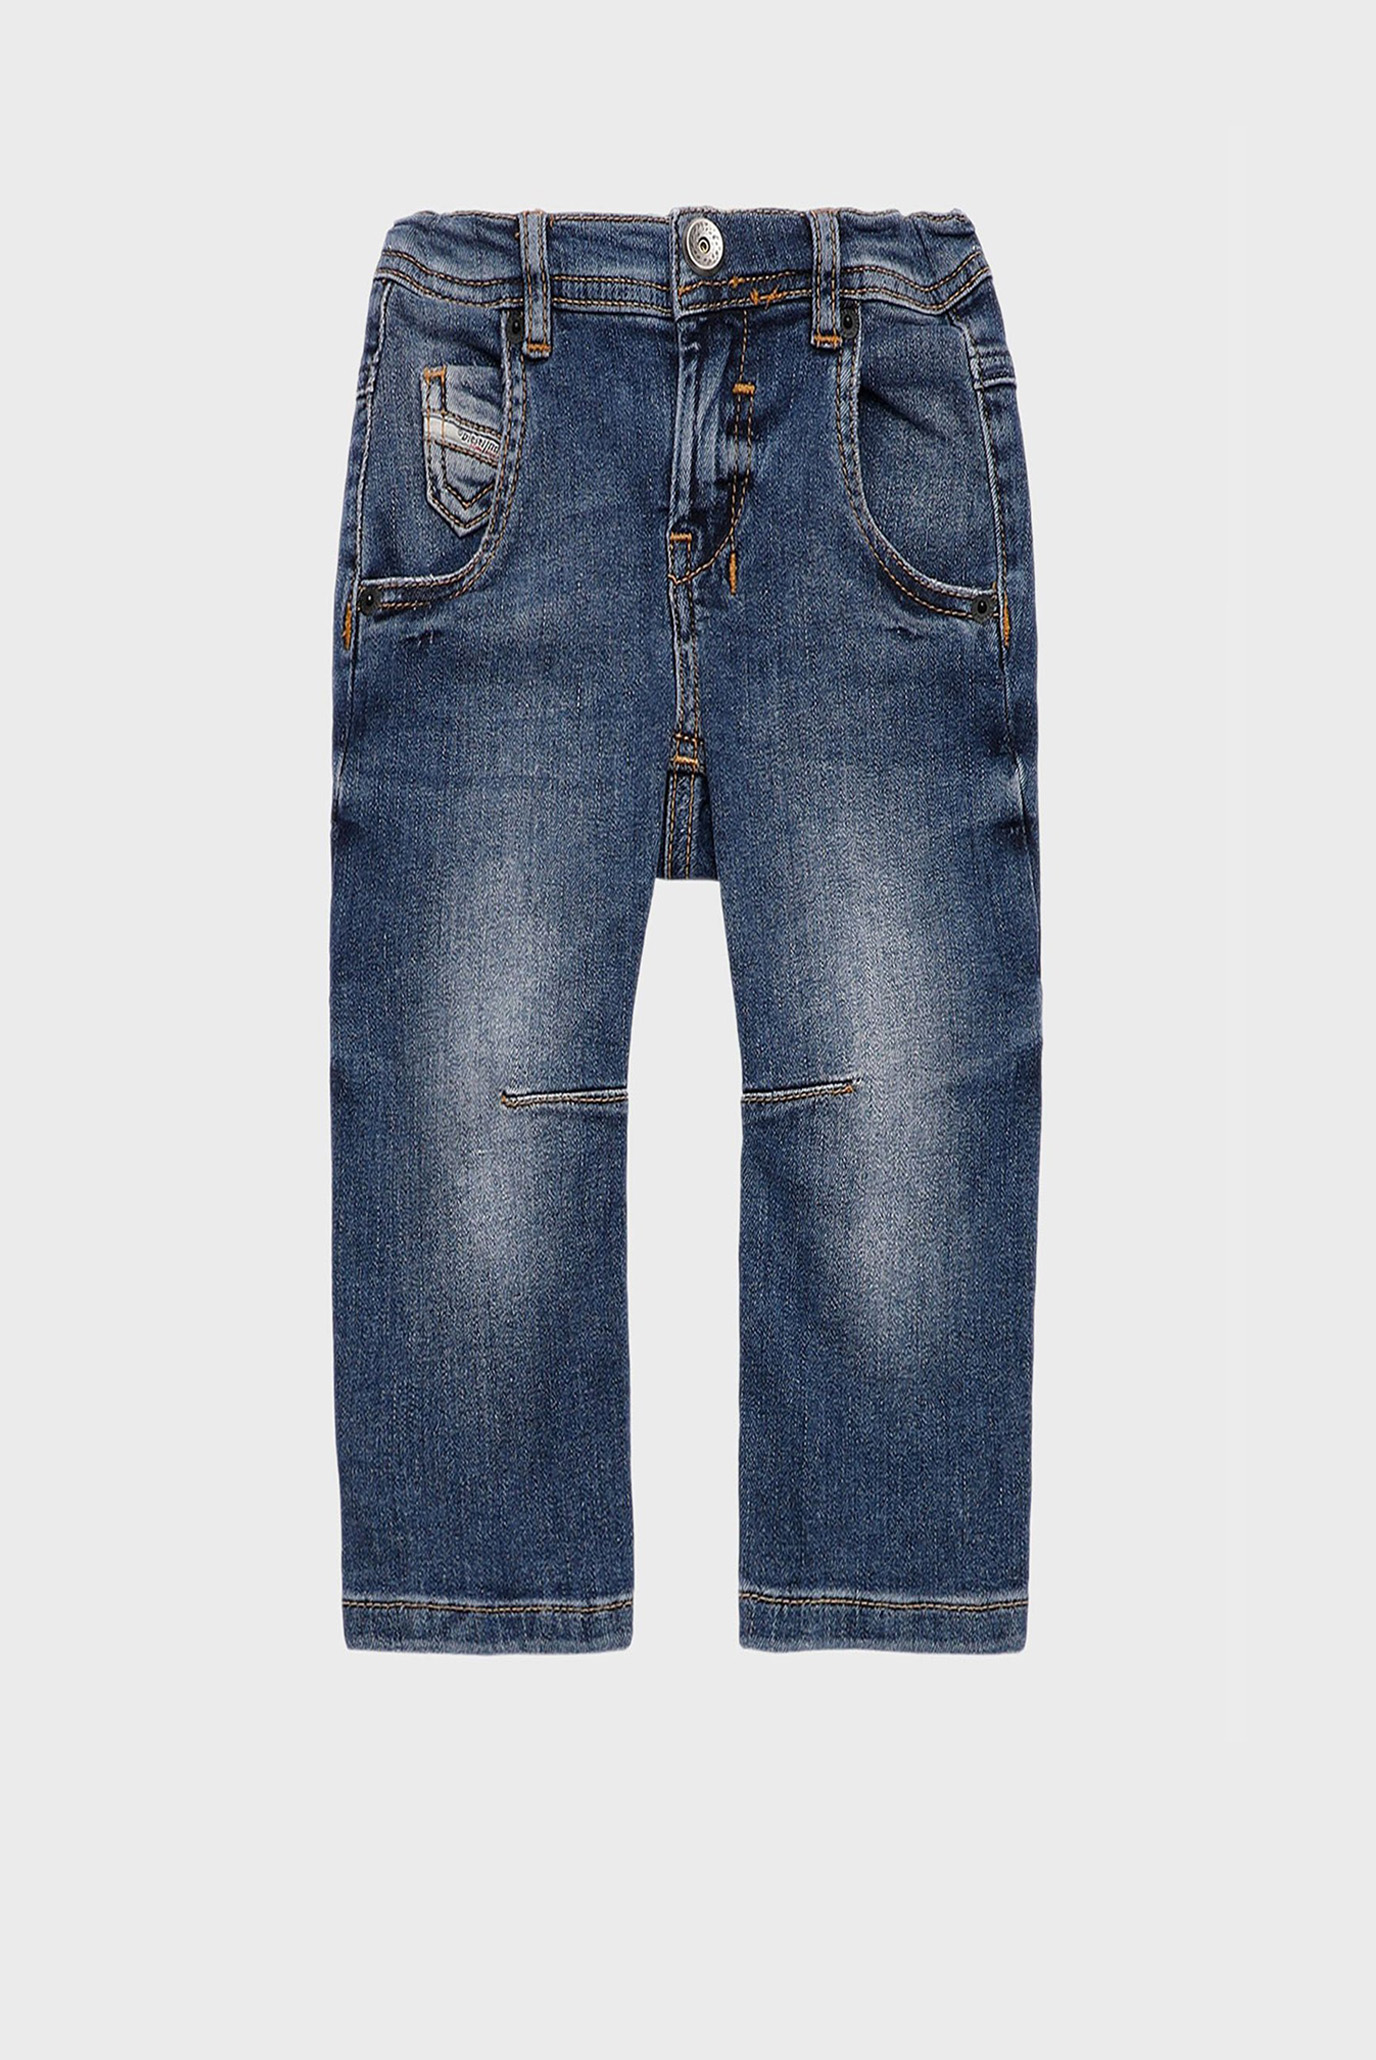 Дитячі сині джинси FANCHI-B 1